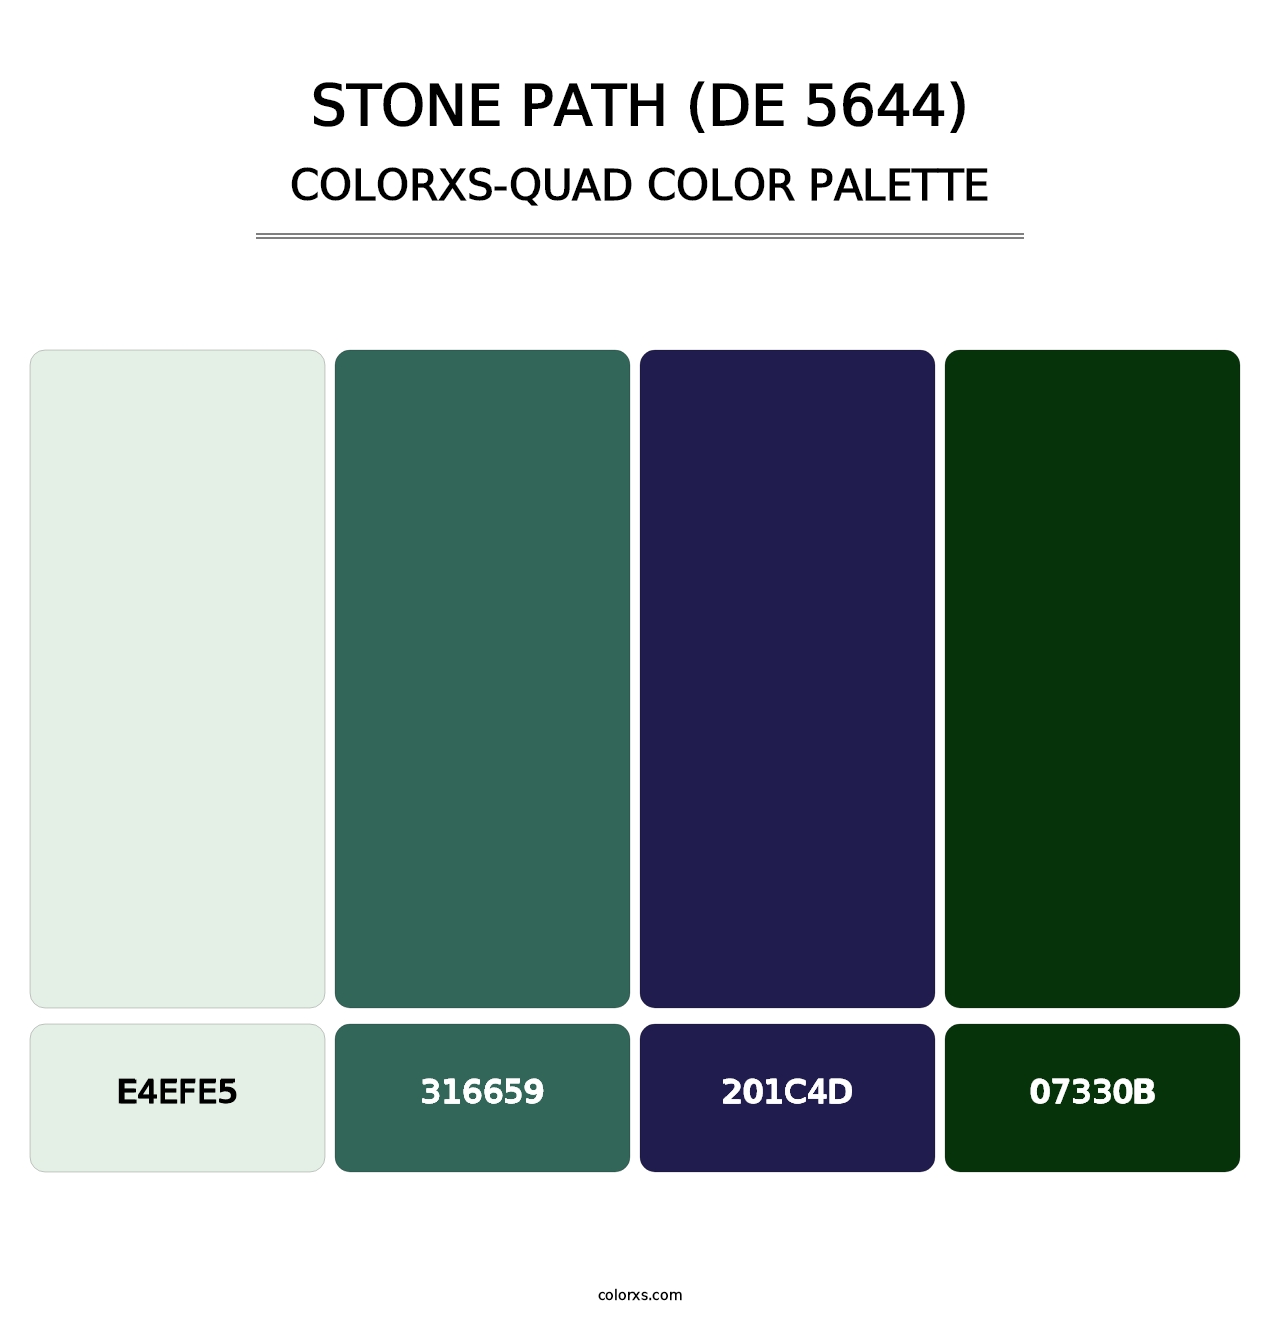 Stone Path (DE 5644) - Colorxs Quad Palette